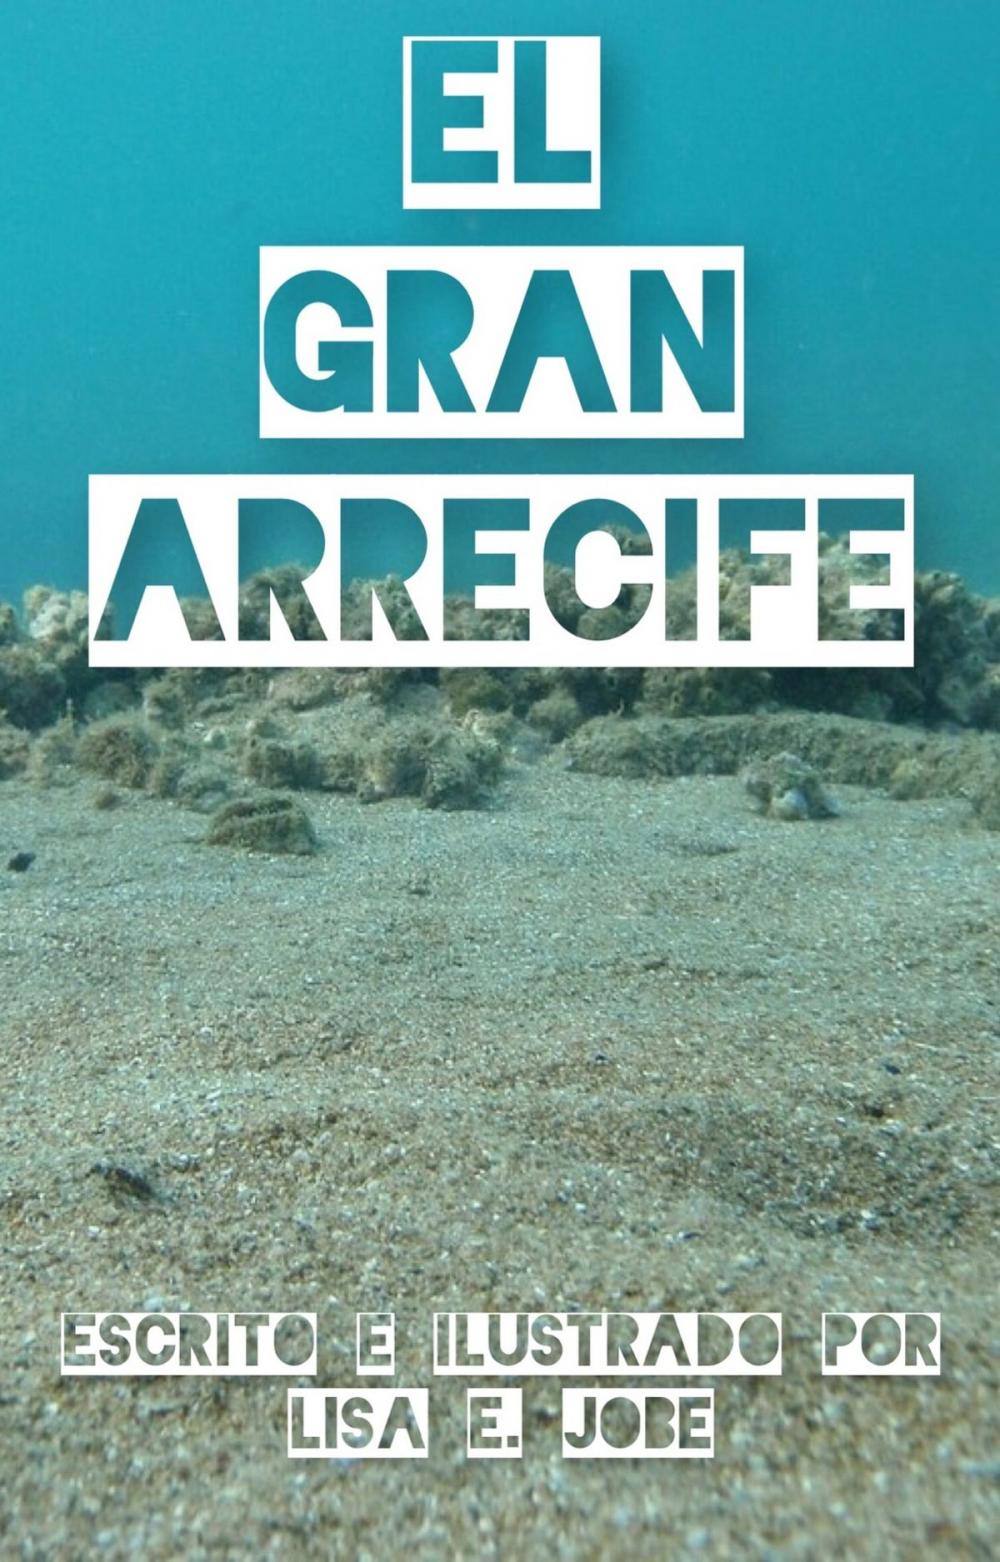 Big bigCover of El Gran Arrecife